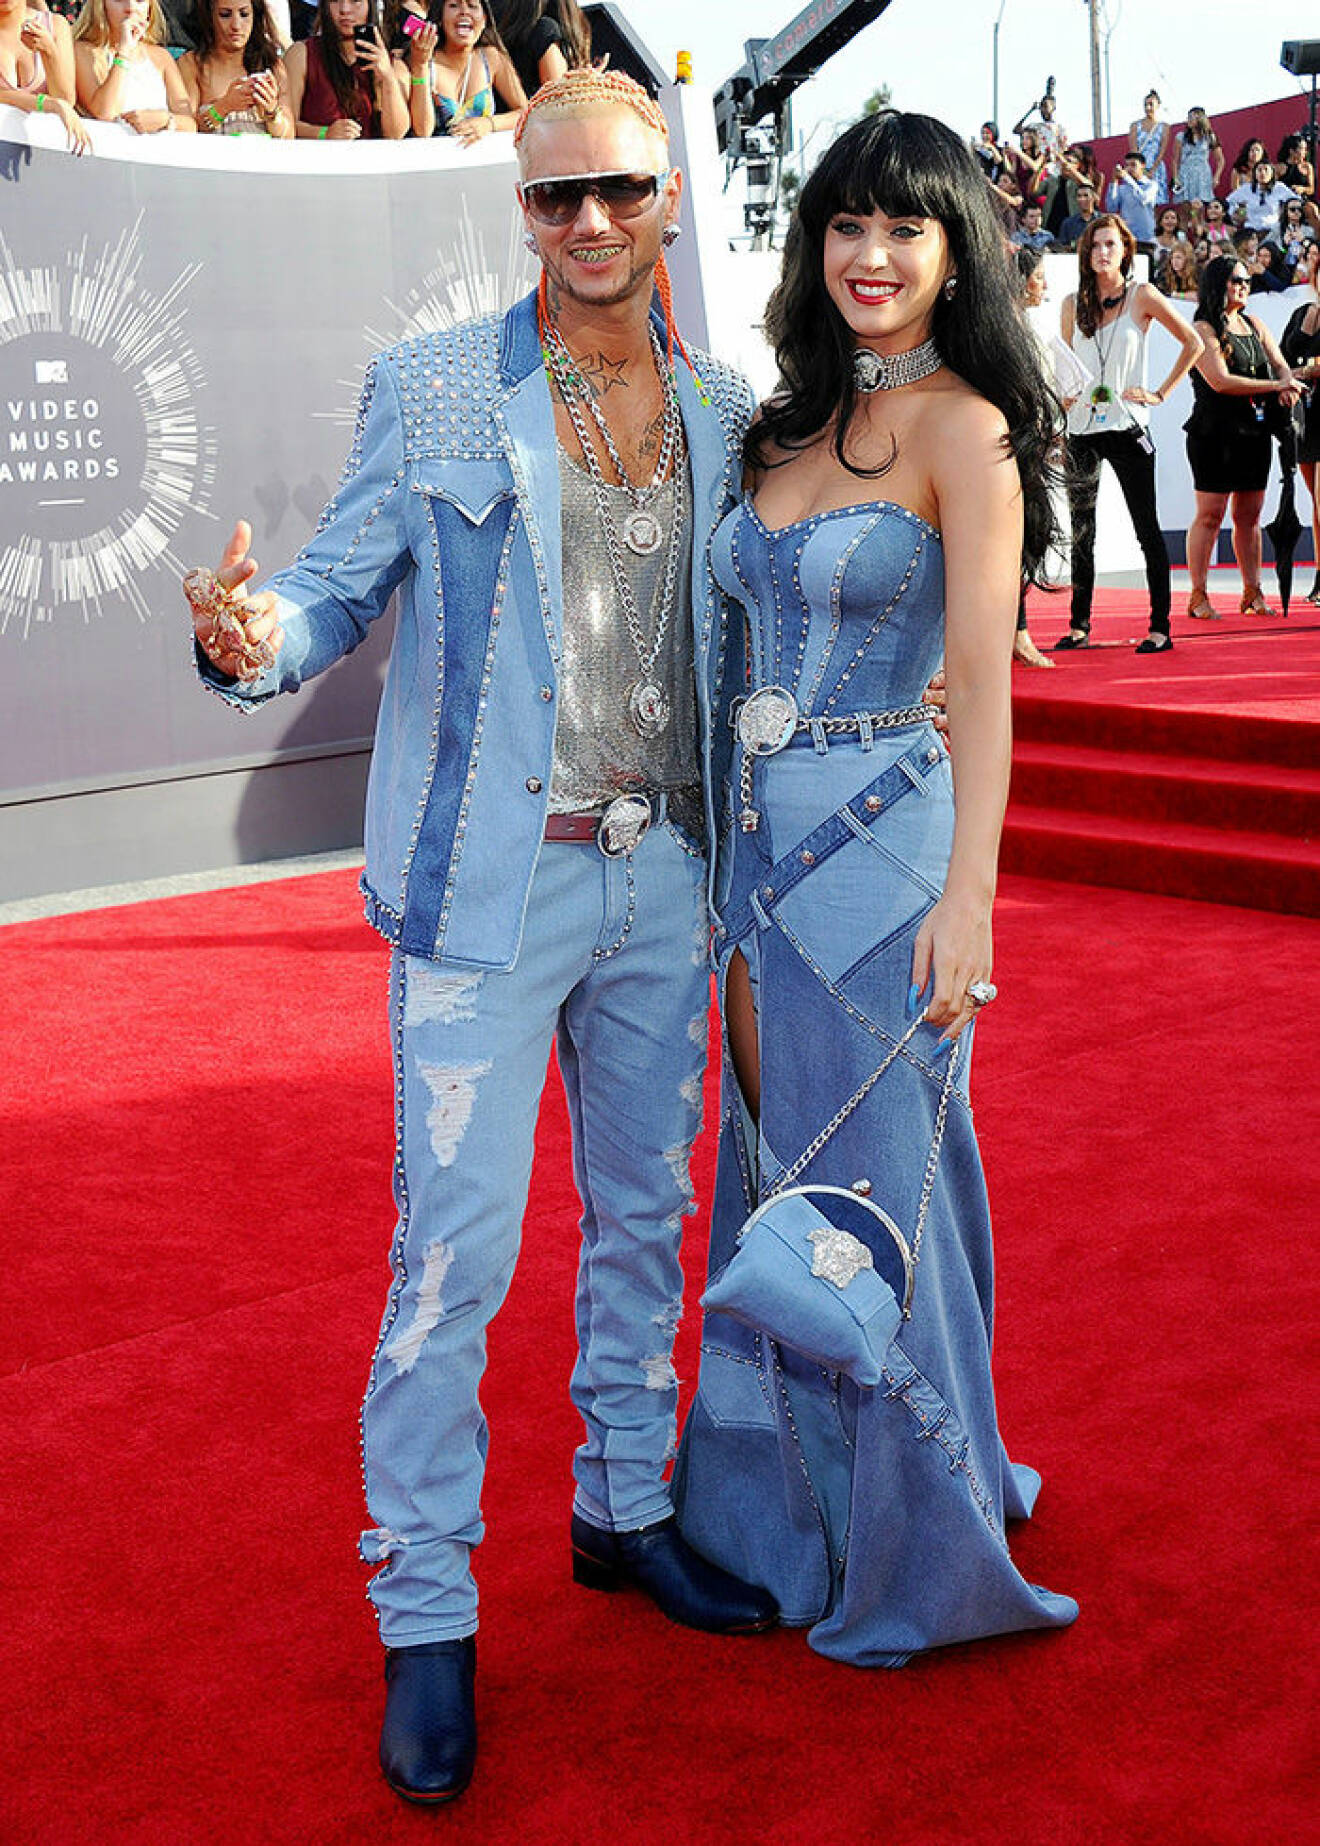 En bild på sångerskan Katy Perry och rapparen Riff Raff på MTV Video Music Awards 2014.